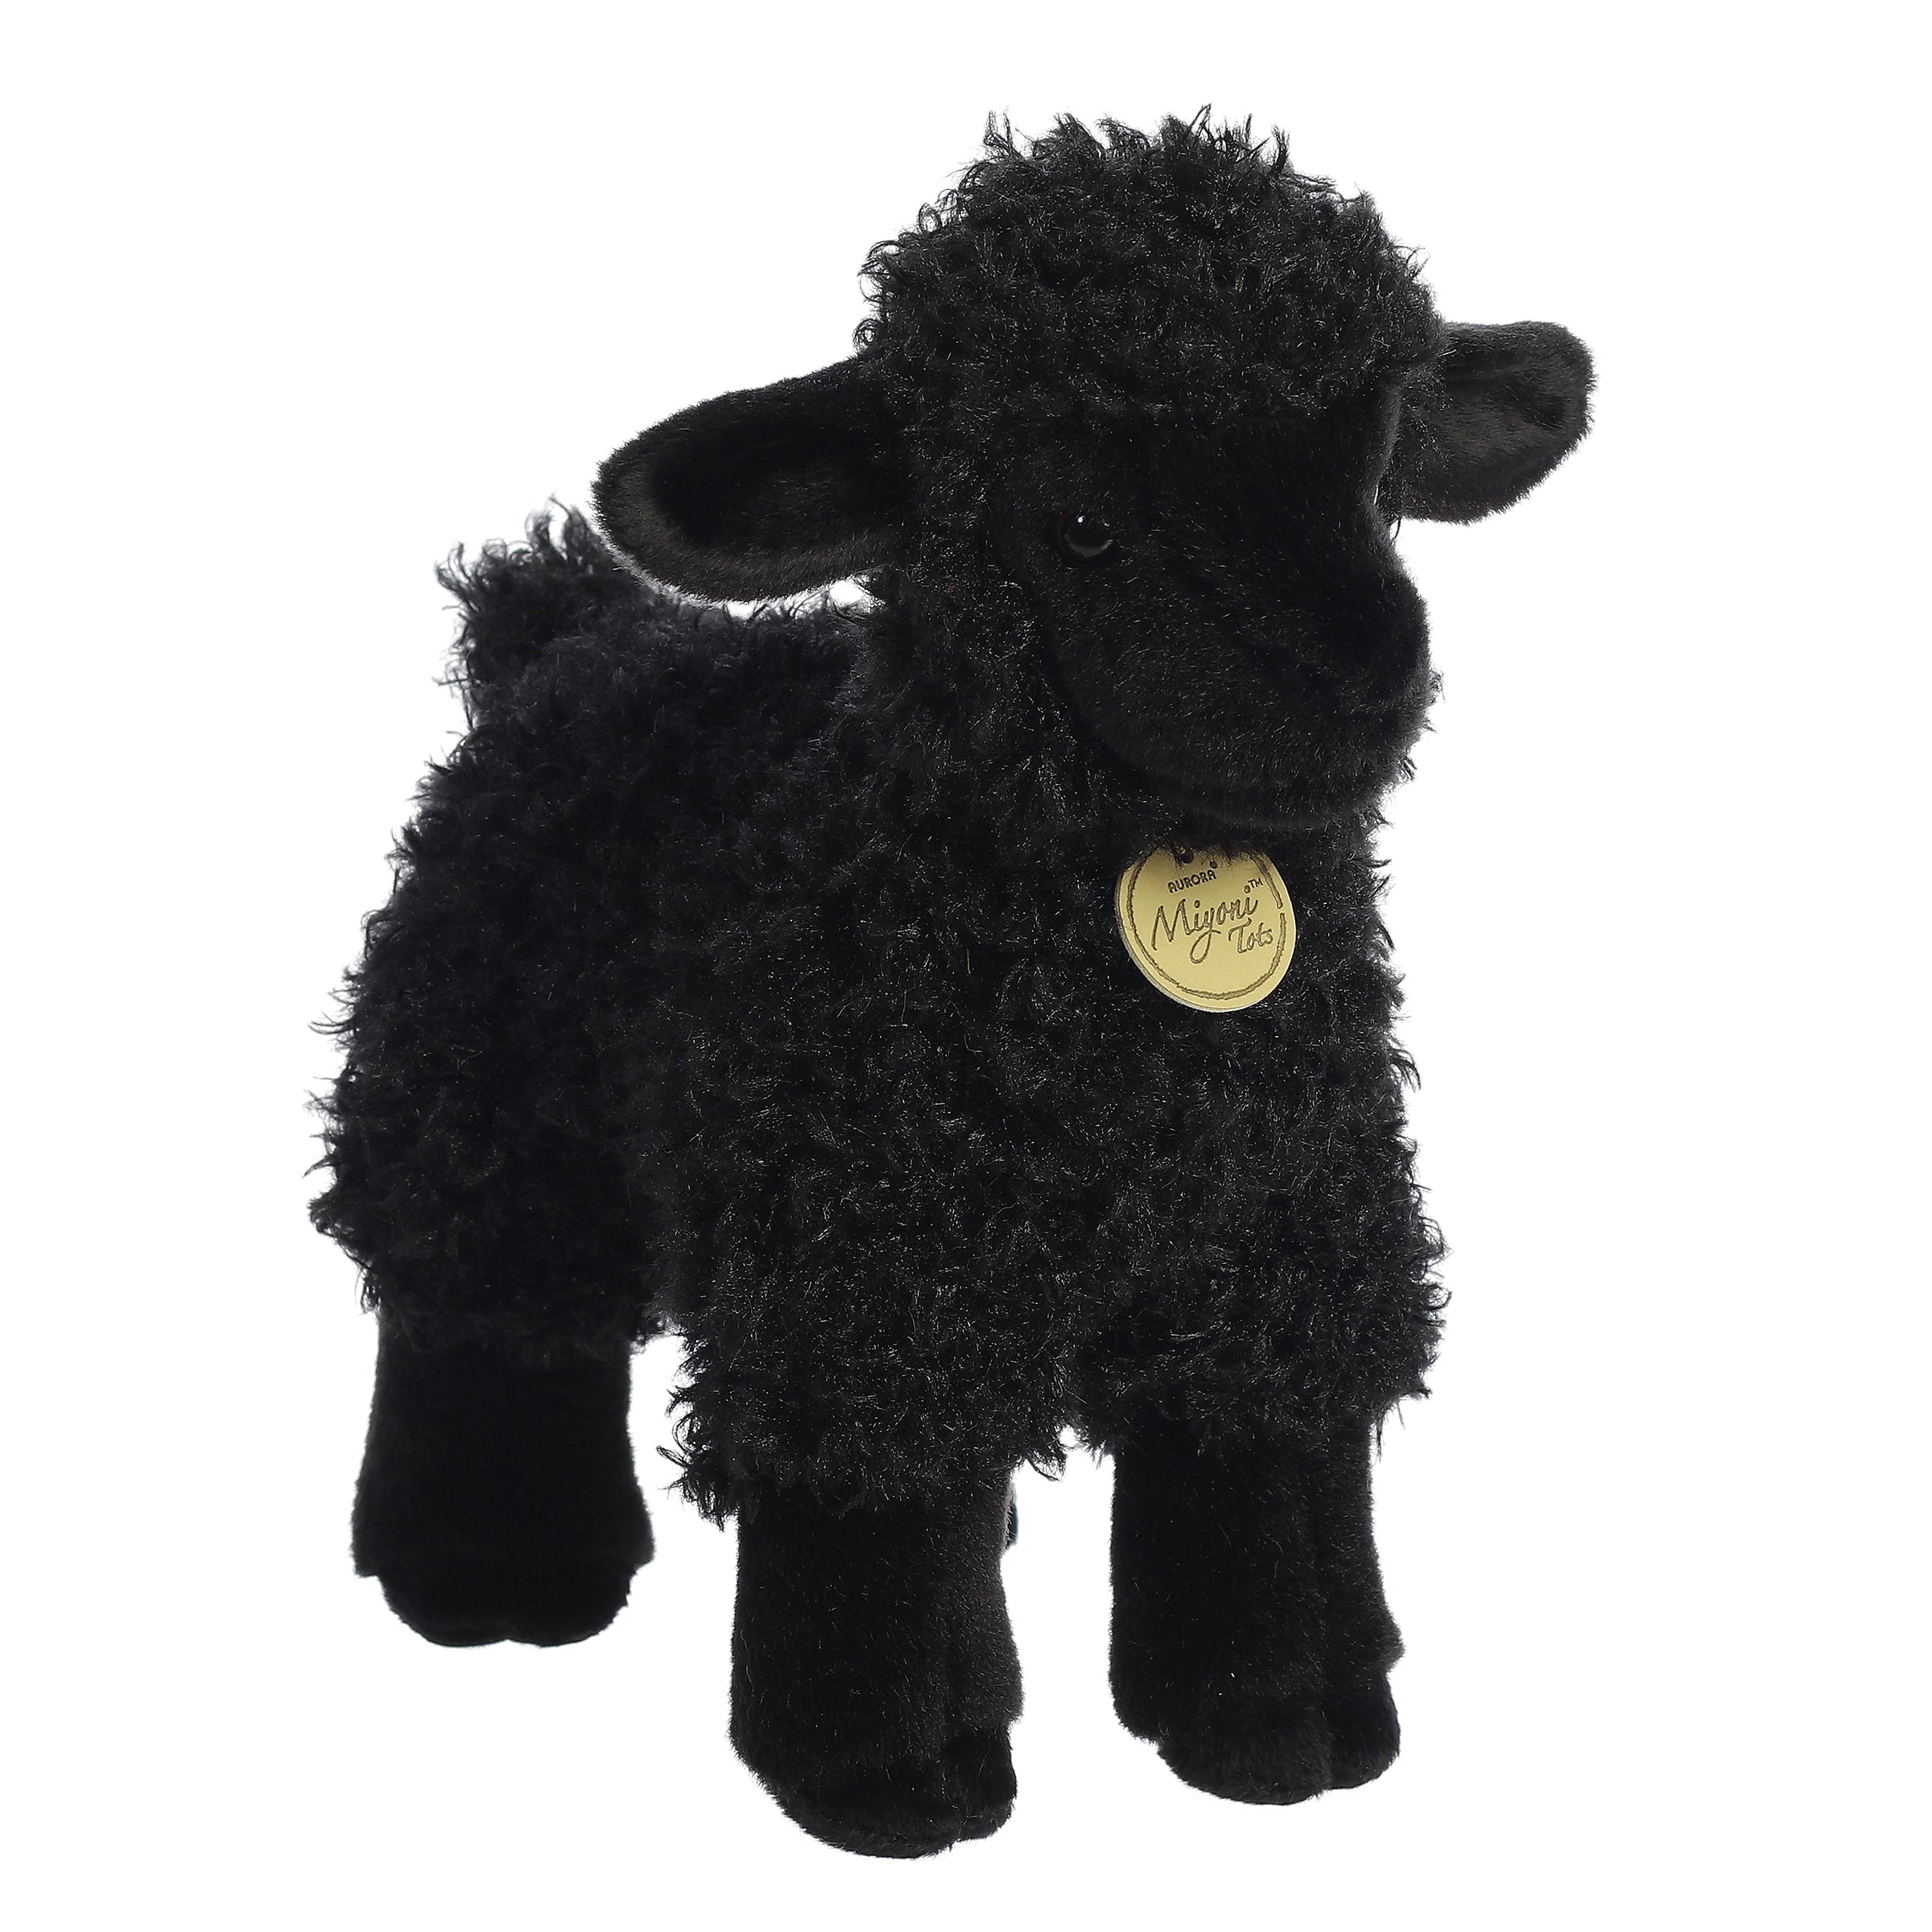 Plush Lamb Collection, Kids Stuffed Animal